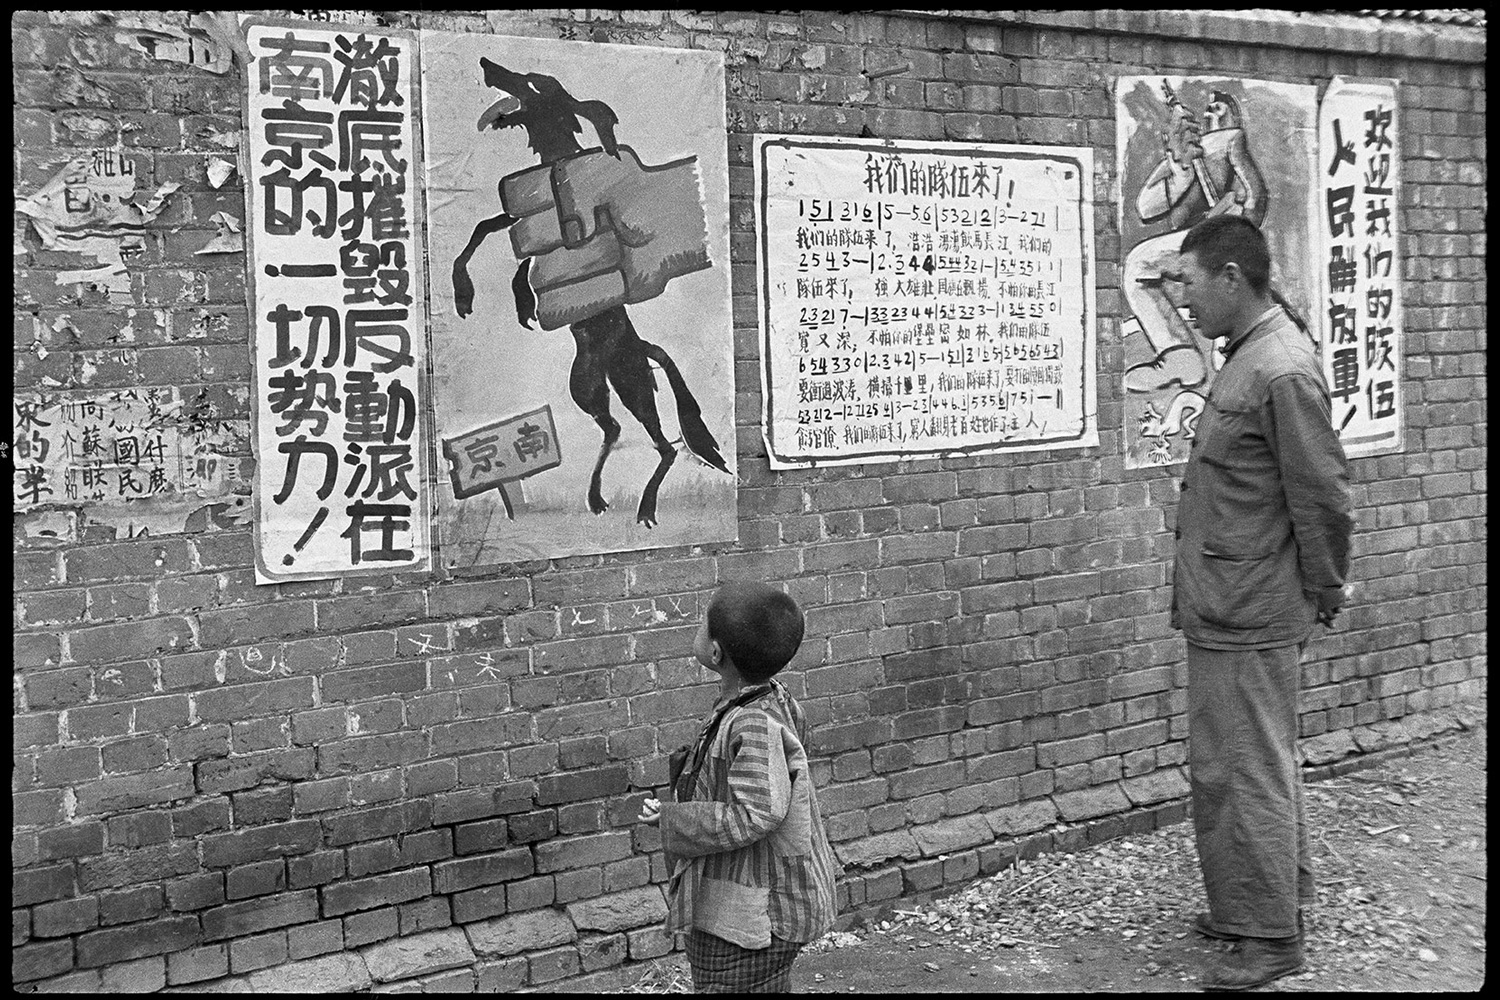 Cina 1948 - 49 | 58 di Henry Cartier - Bresson è la mostra che il MUDEC presenta ed ospita, dal 17 febbraio al 3 luglio 2022.  